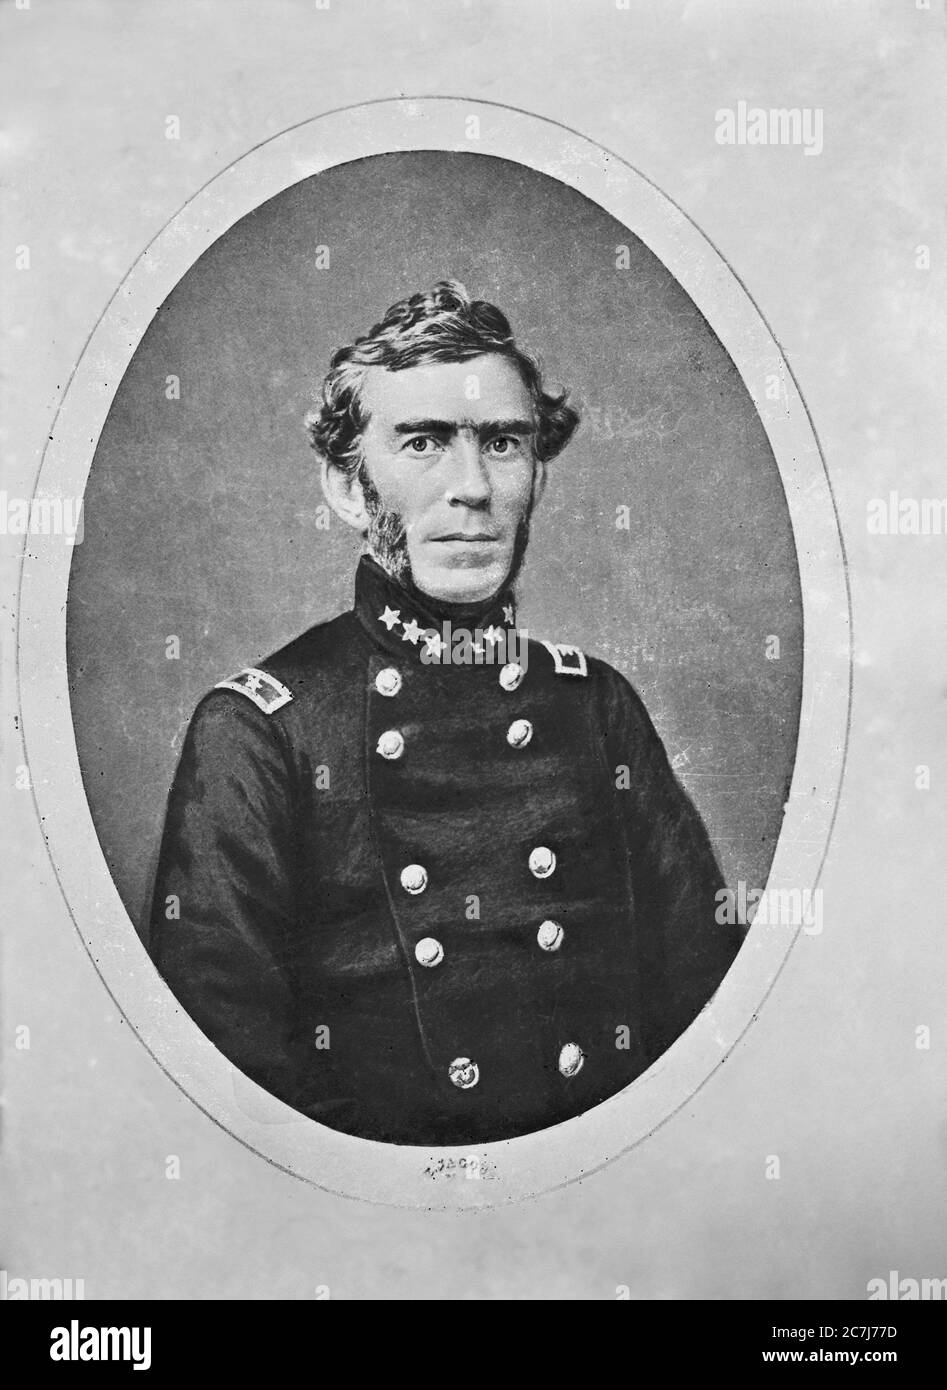 Braxton Bragg, général, Armée des États confédérés, Portrait en demi-longueur, Collection de photographies de la guerre civile, années 1860 Banque D'Images